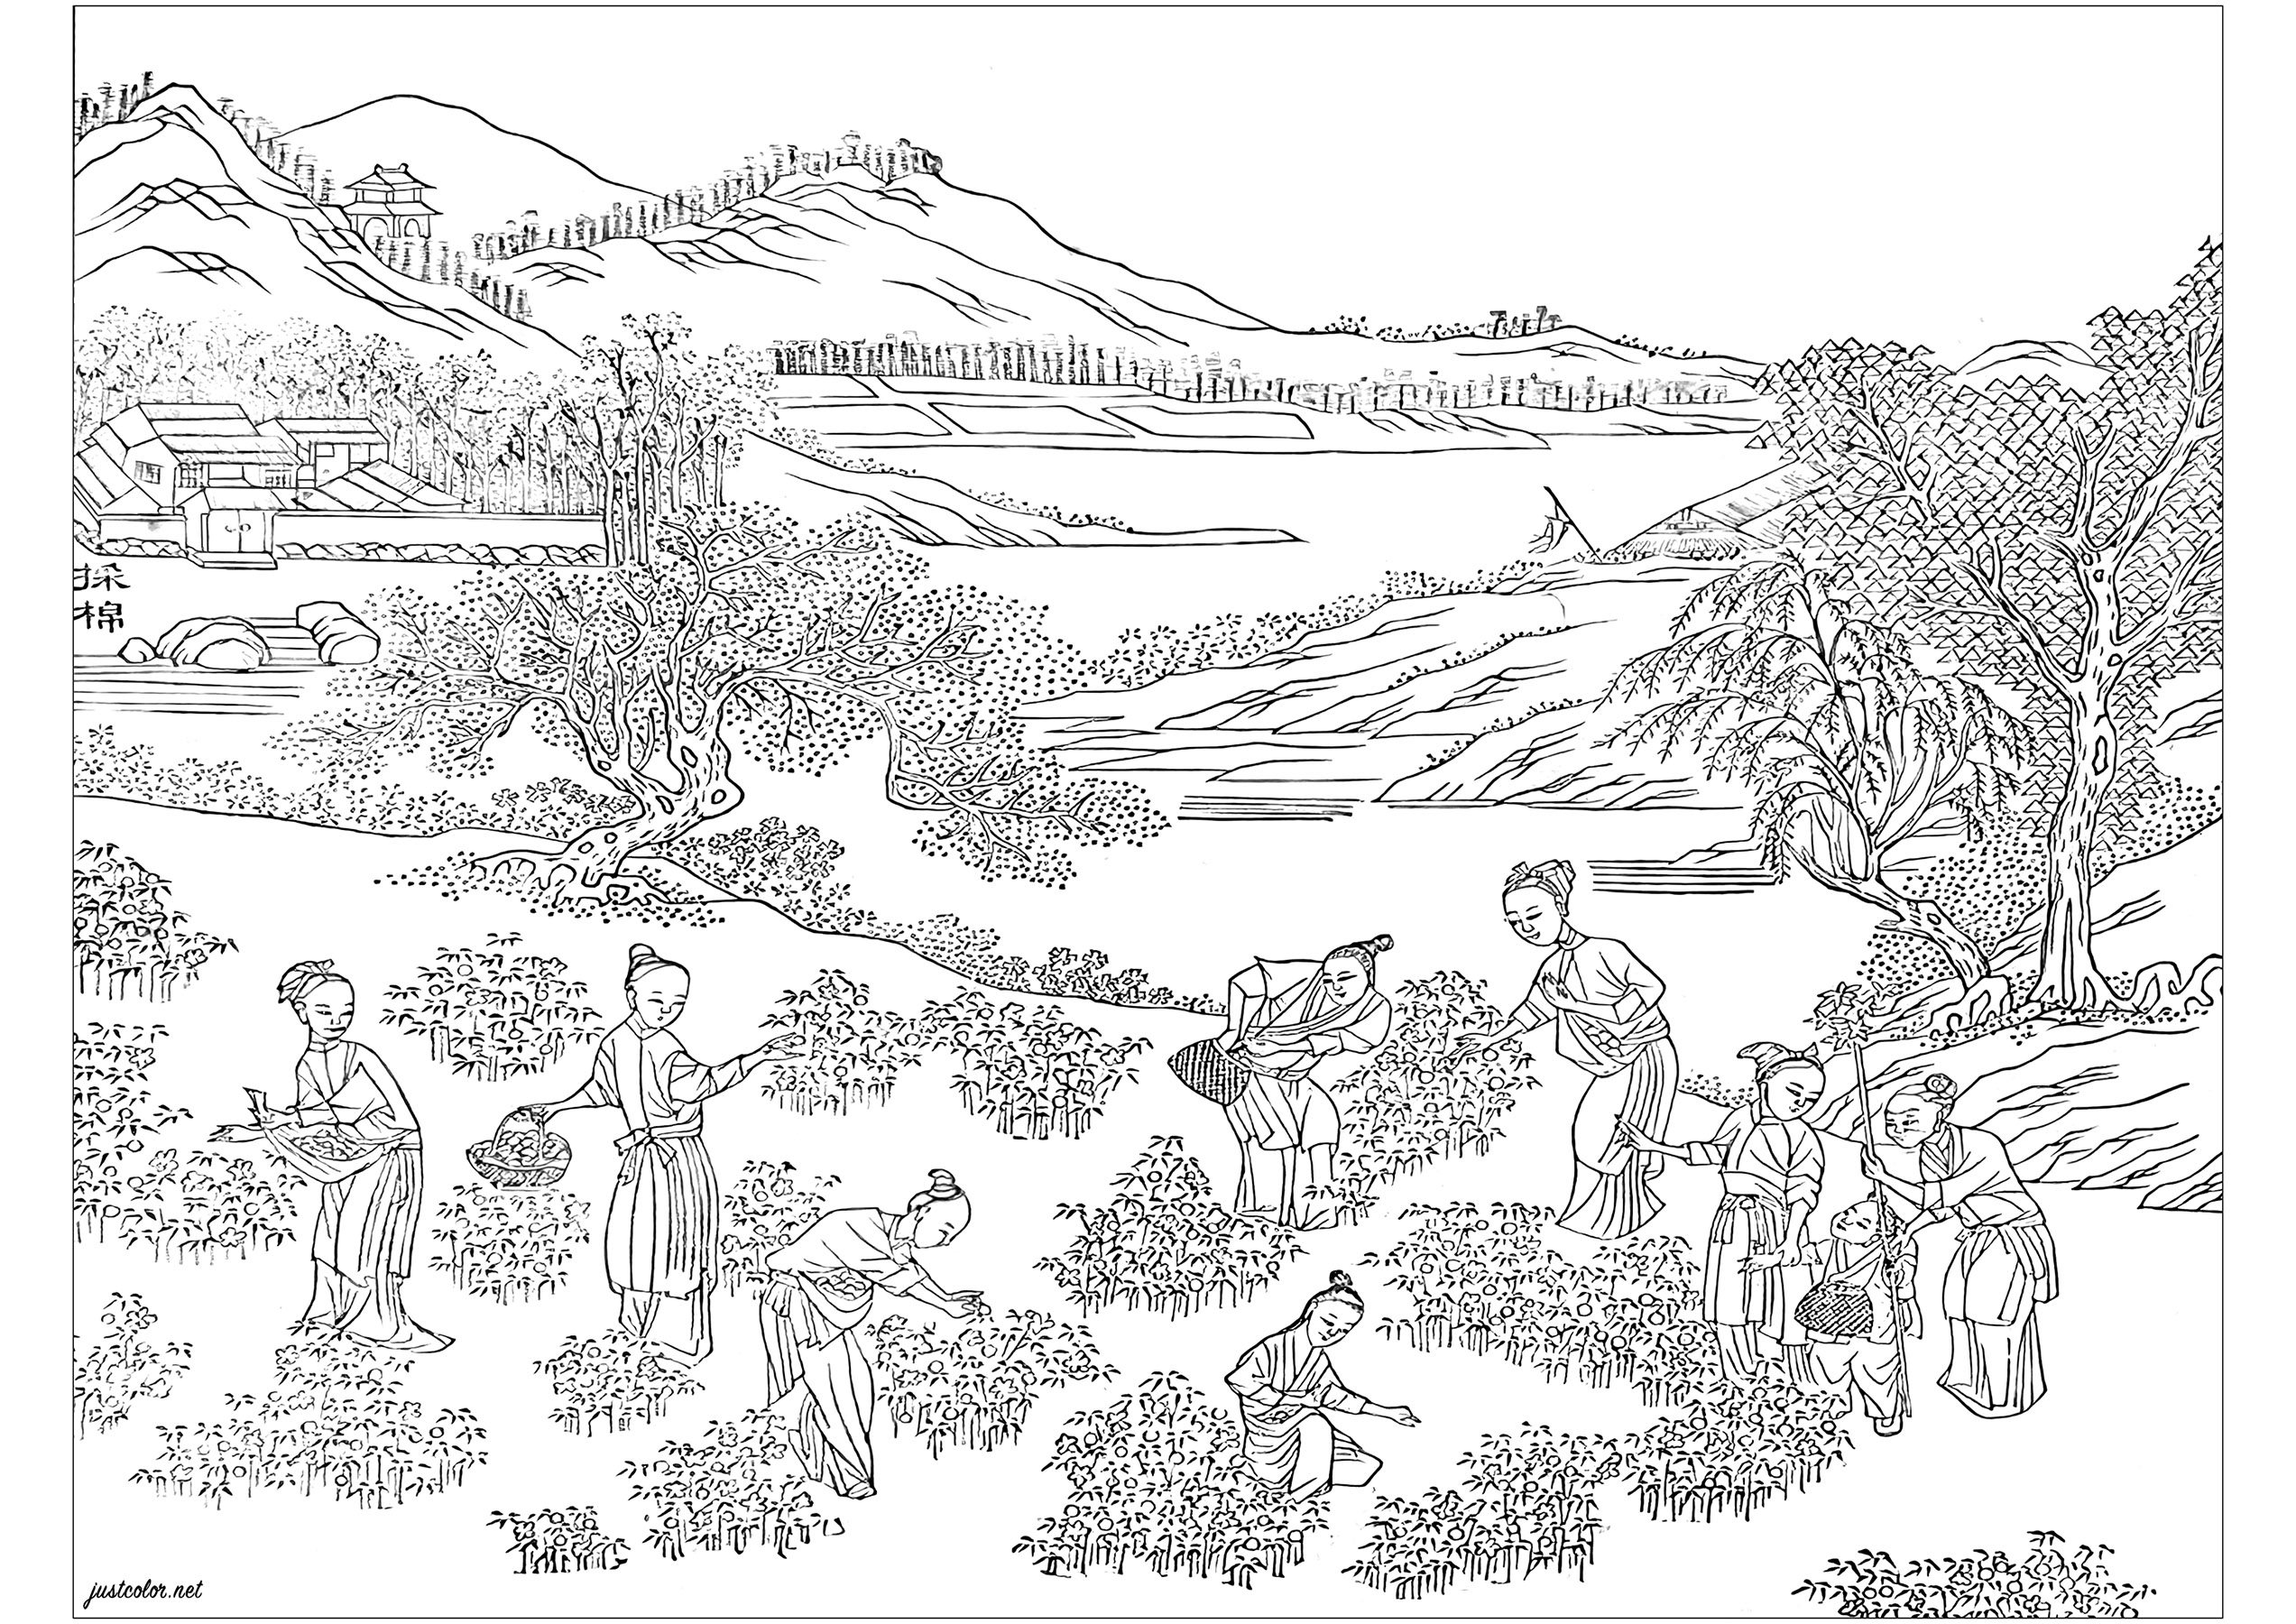 Coloreado creado a partir de una página ilustrada del álbum 'Images illustrant une production de coton' (1765). Este álbum se produjo para promocionar las últimas tecnologías en el cultivo del algodón y la producción textil en la China del siglo XVIII. El libro está expuesto en la Biblioteca Chester Beatty de Dublín (Irlanda).